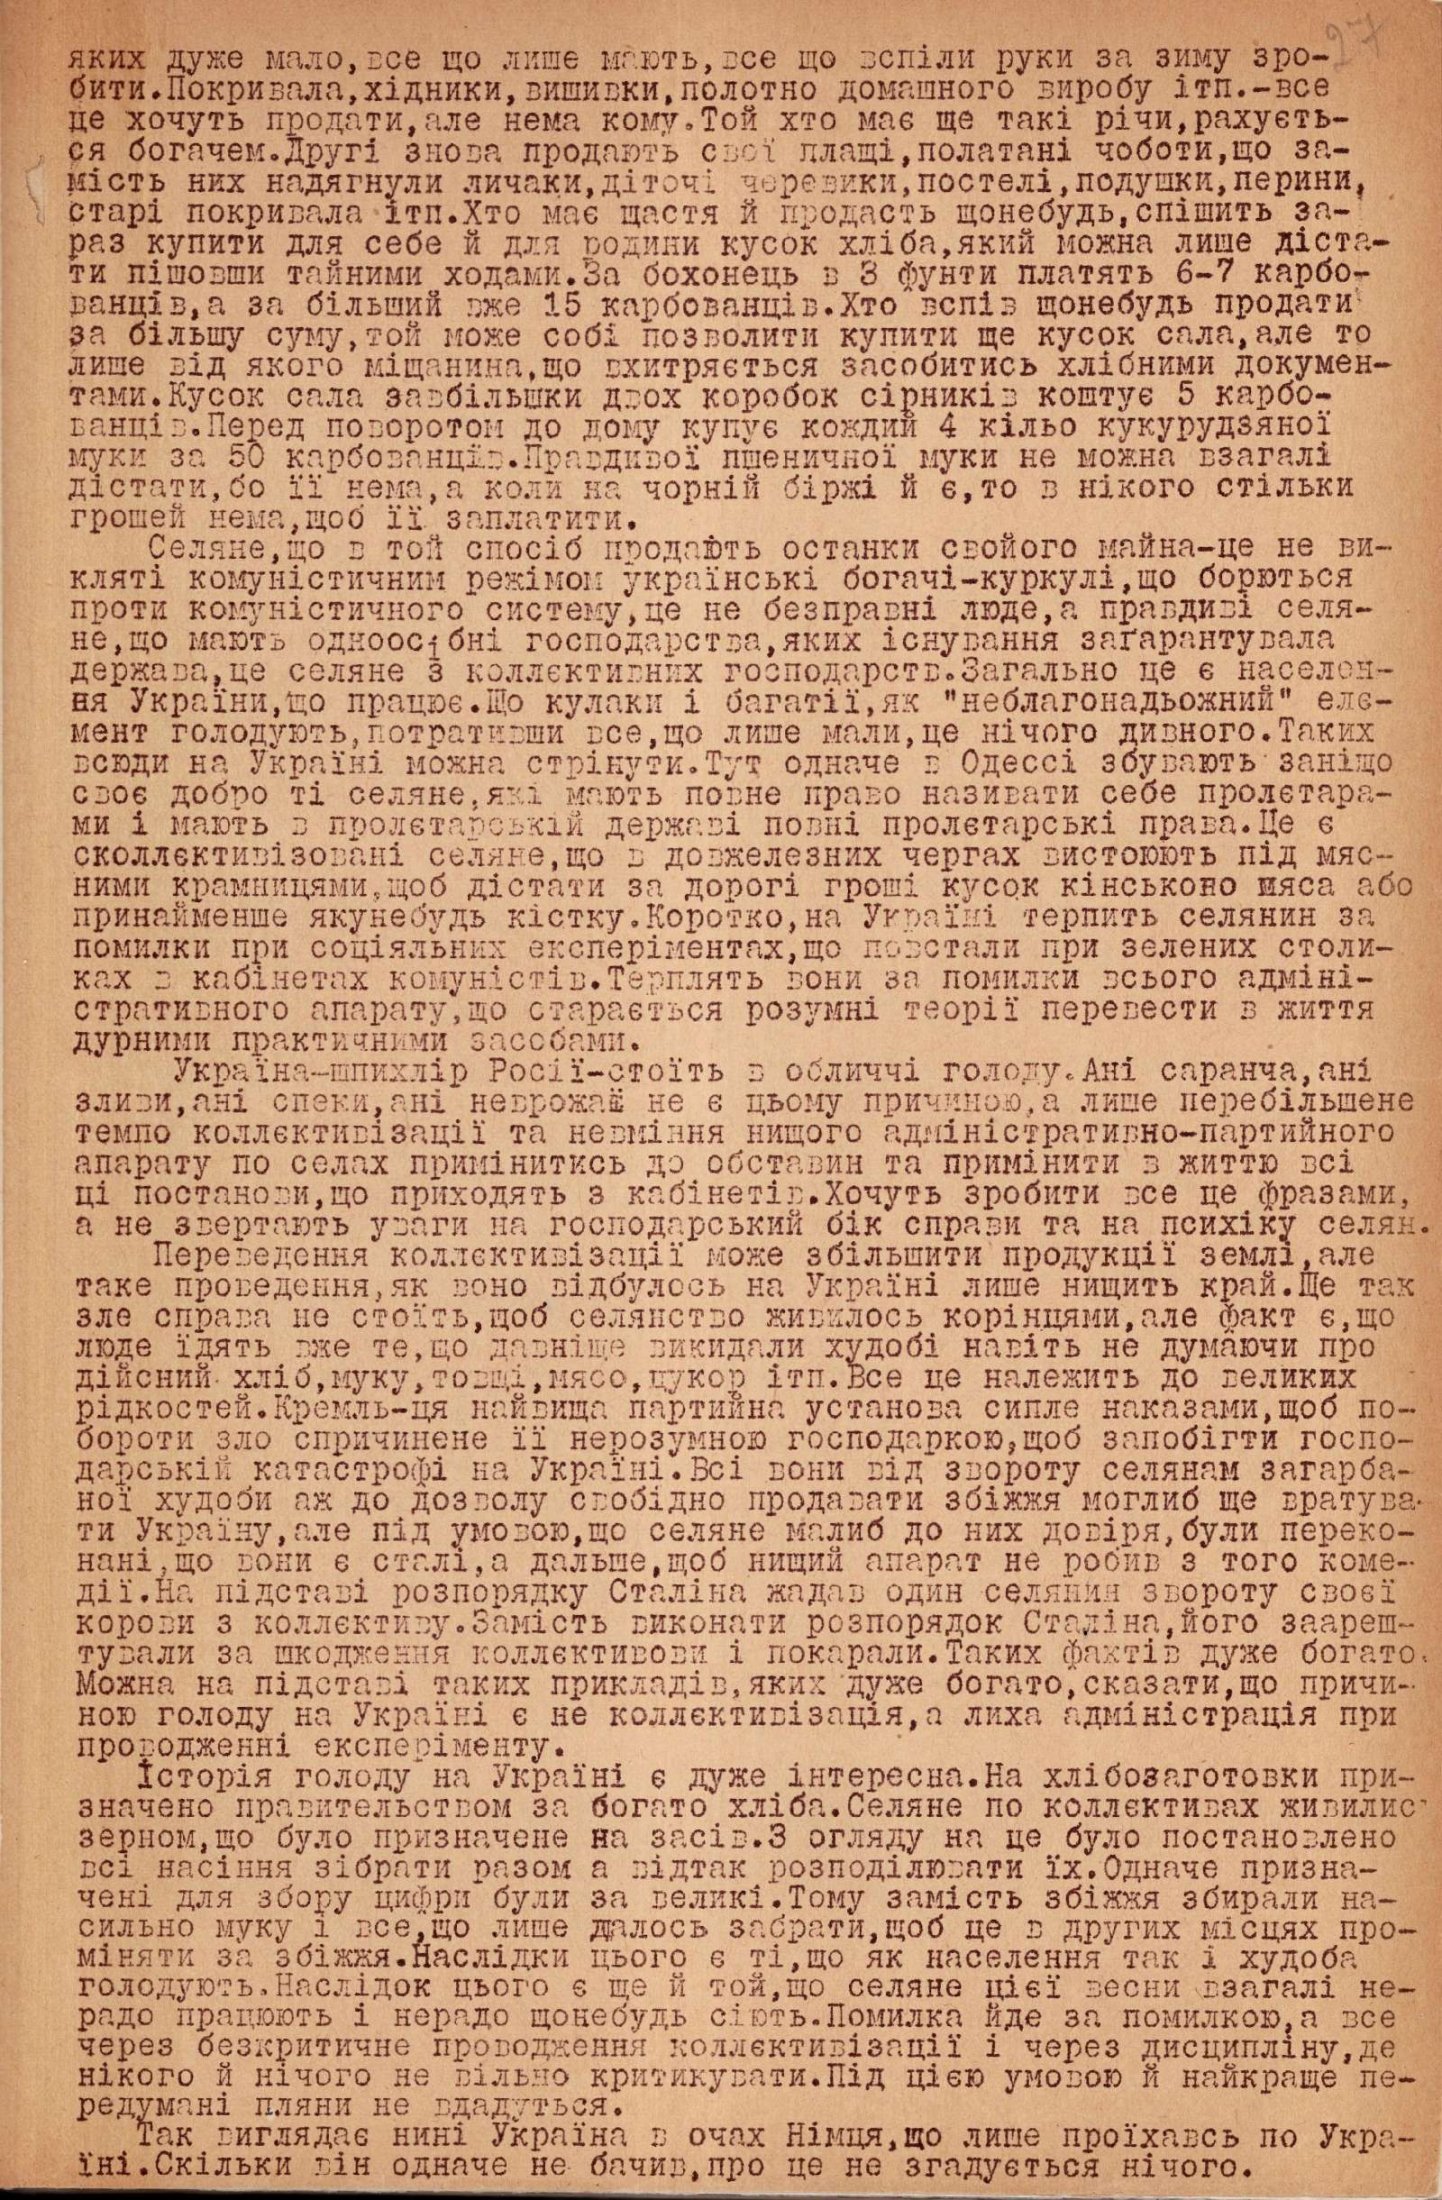 Повідомлення Української пресової служби в Берліні про статтю німецького кореспондента В. Штайна щодо голоду в Україні. 30 травня 1932 р. 